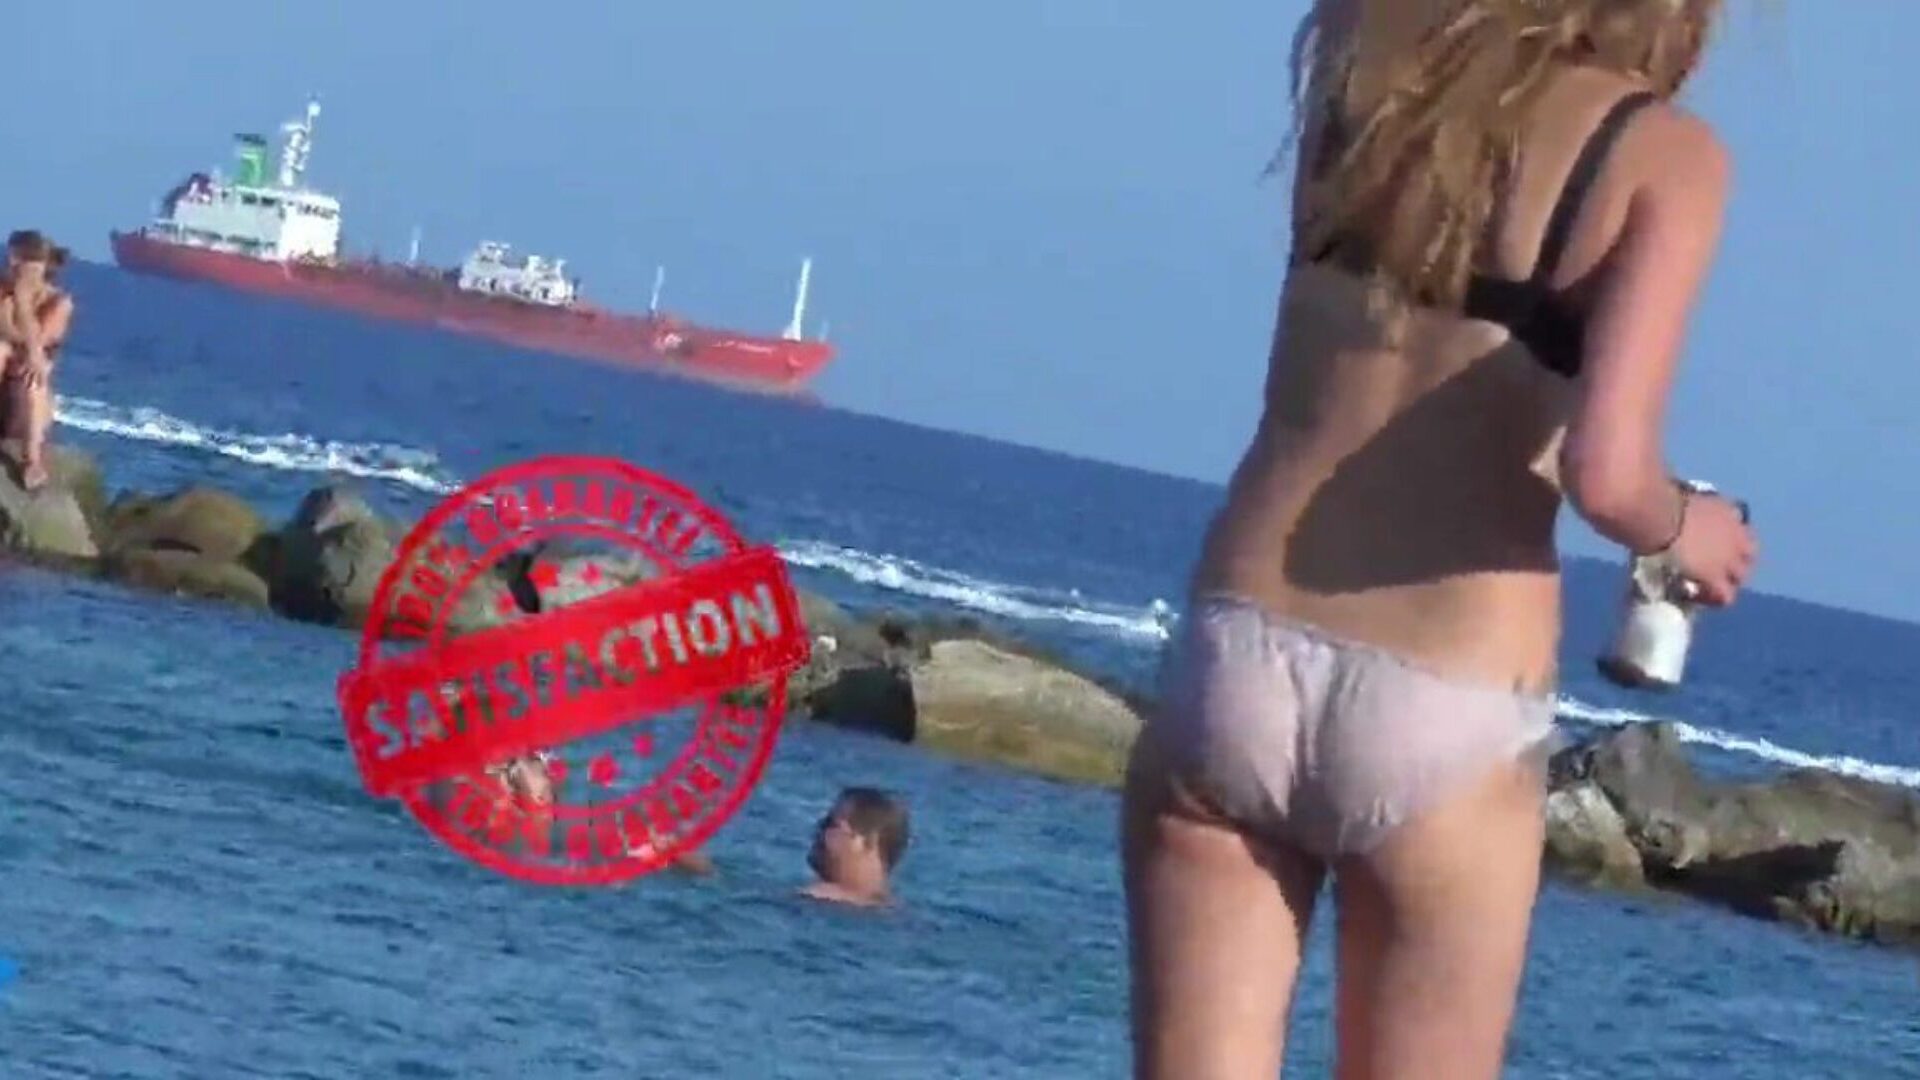 tengerparti lány megy úszni bugyiban - vigyázni ... nézni strand lány menni úszni bugyiban - nézni filmet a xhamster - a végső gyűjteménye mindenki számára ingyenes tini & kukkoló hd keménymag pornó tube film jelenetek